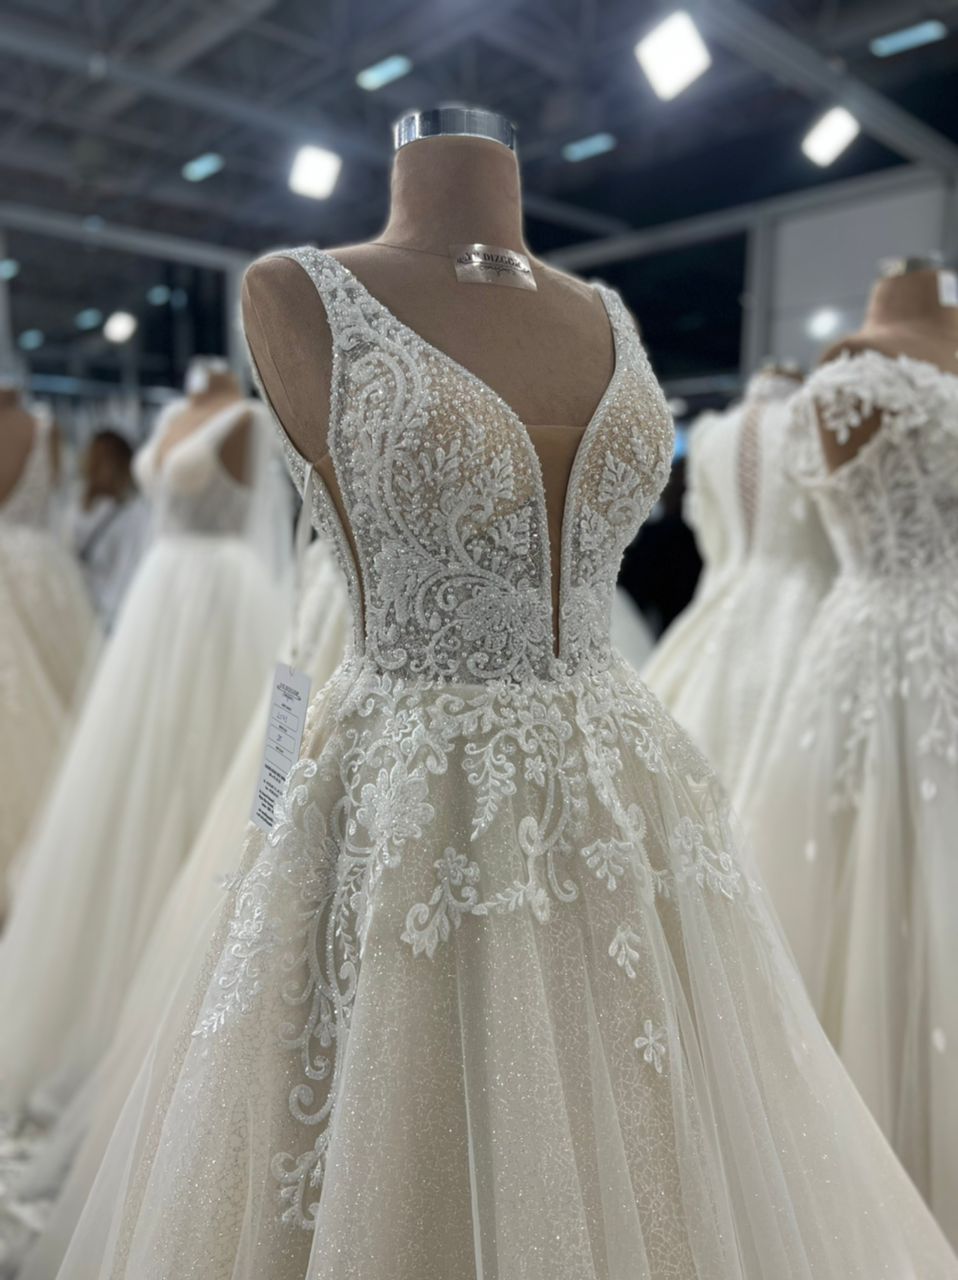 زیباترین مدل لباس عروس دکلته یقه هفت خاص - مزون گالانت